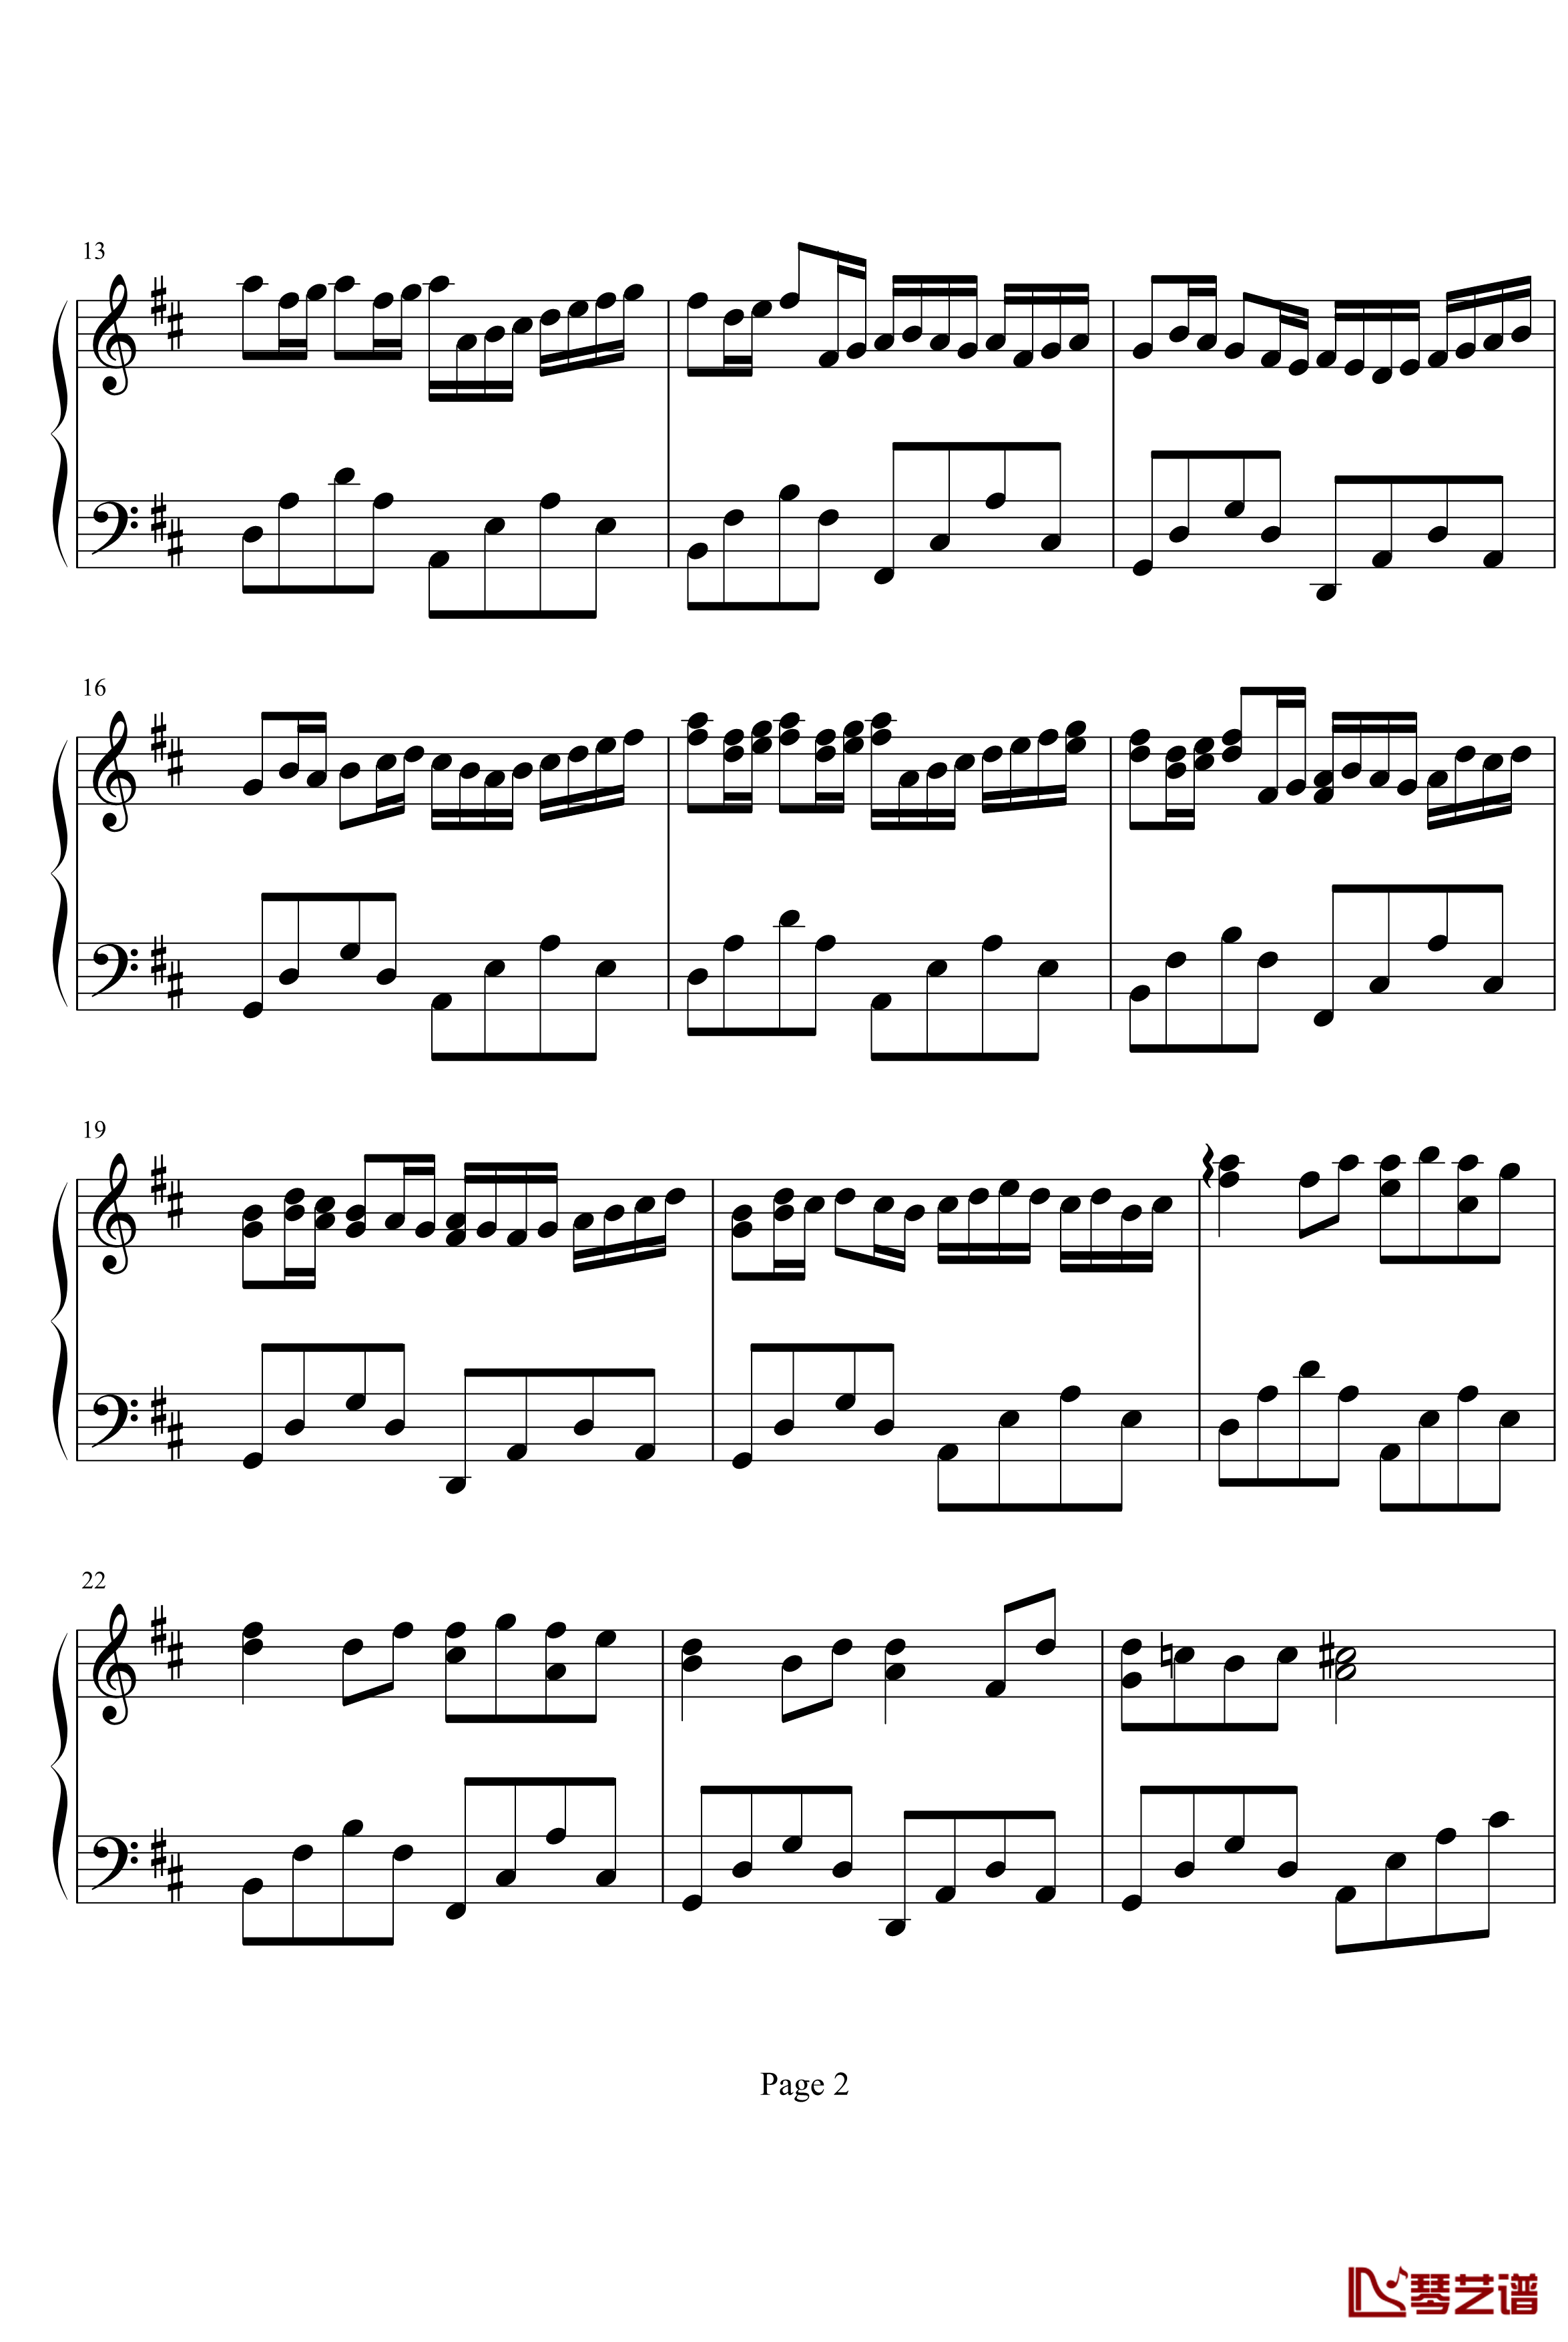 卡农钢琴谱-canon-帕赫贝尔-Pachelbel2